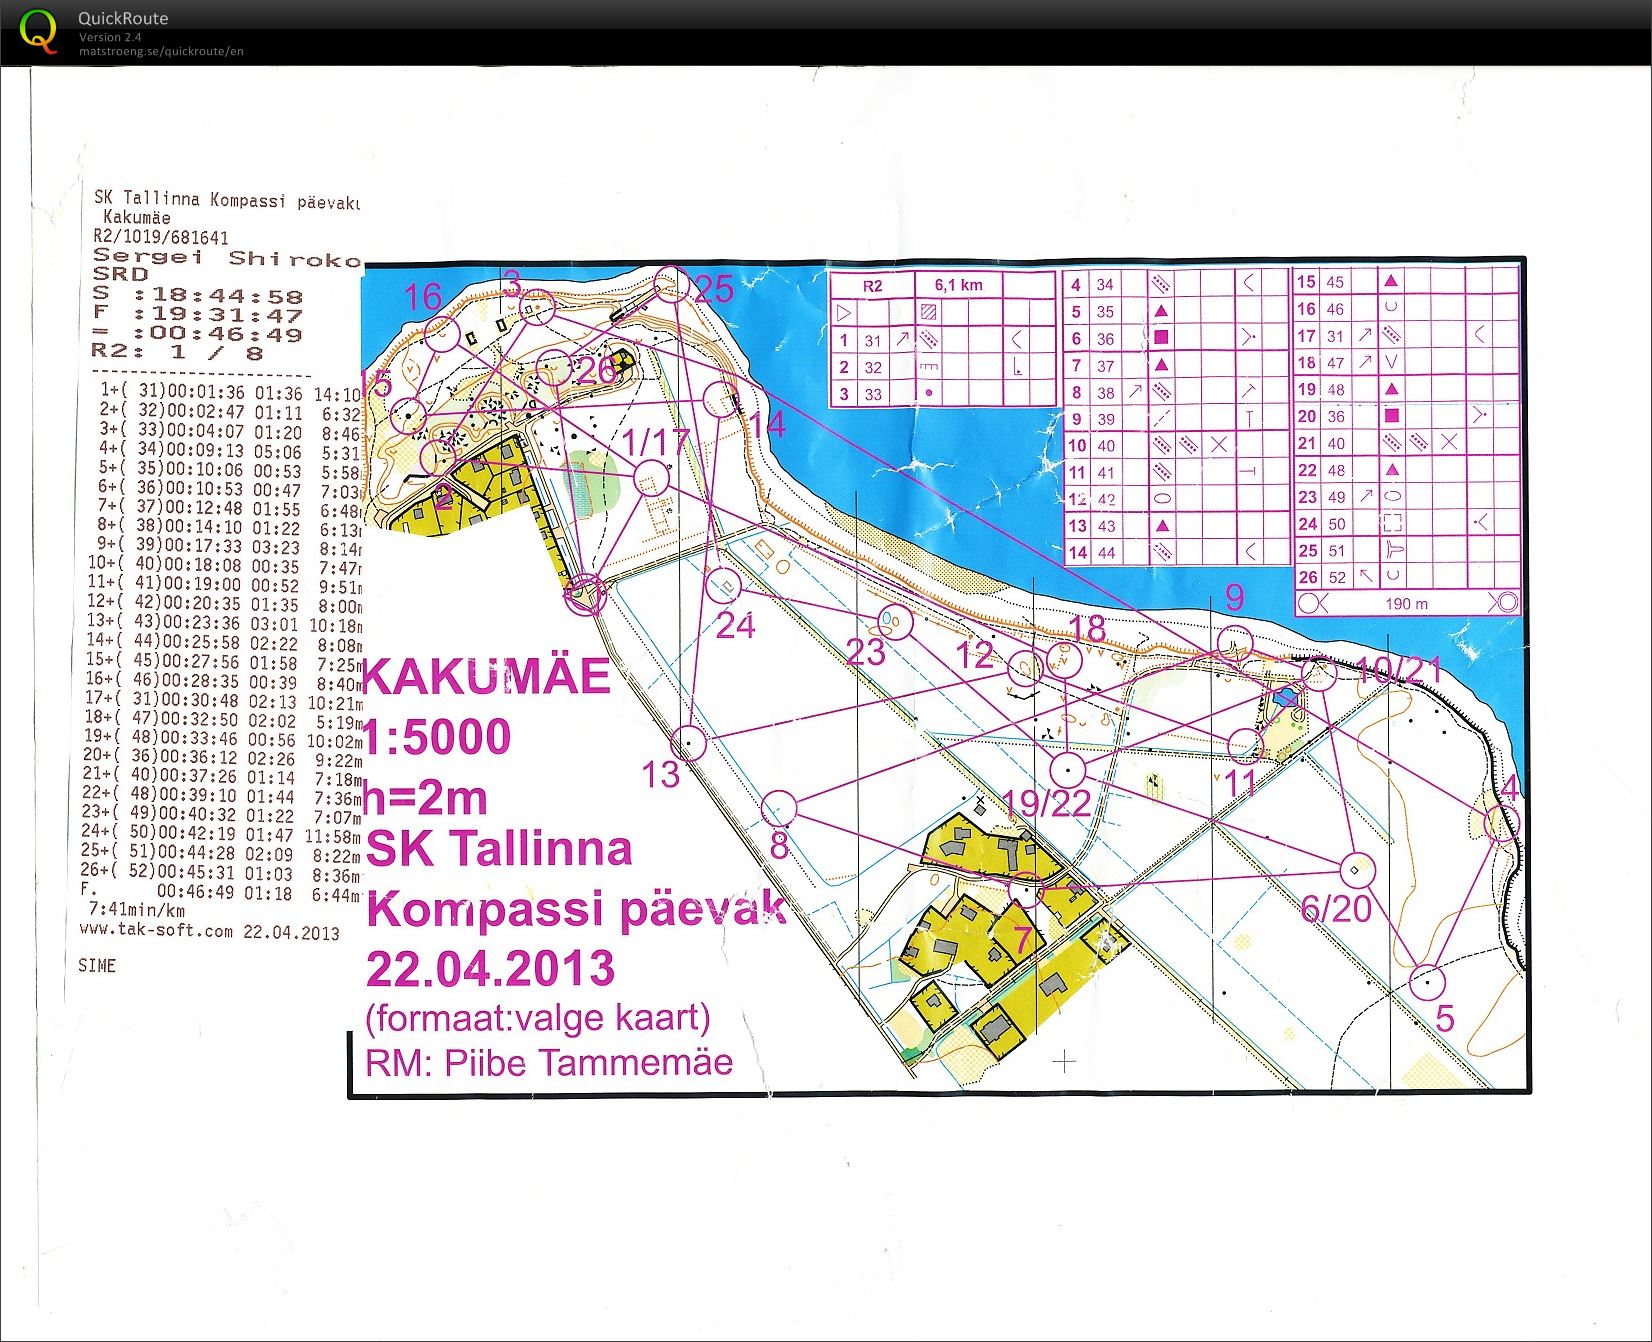 SK Tallinna Kompassi päevak (22-04-2013)